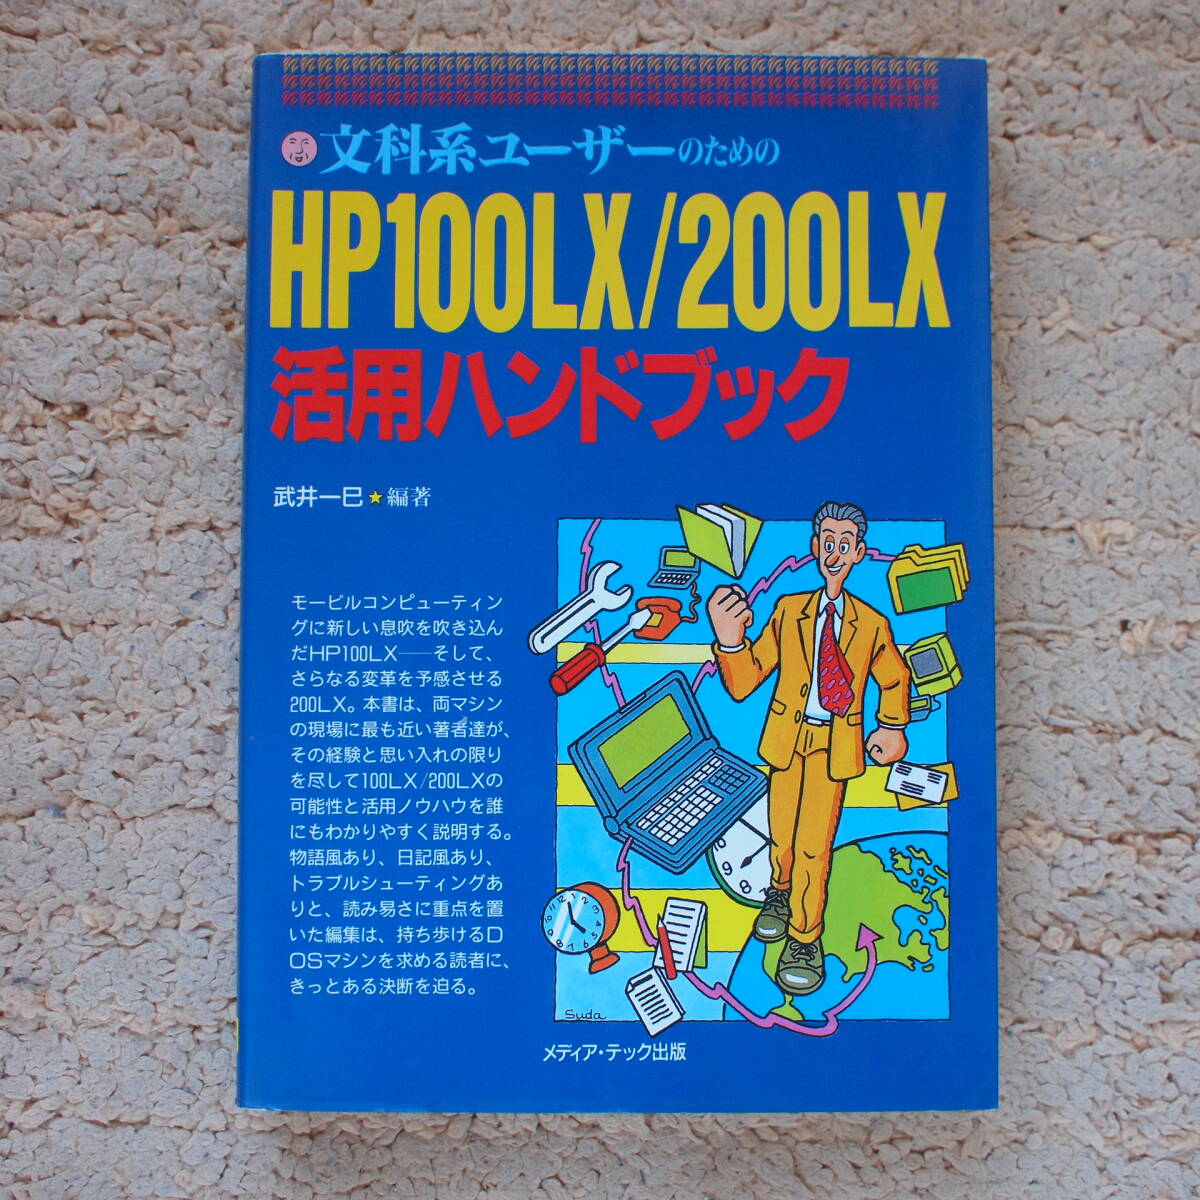 文科系ユーザーのためのHP100LX/200LX活用ハンドブック  武井一巳 (著)の画像1